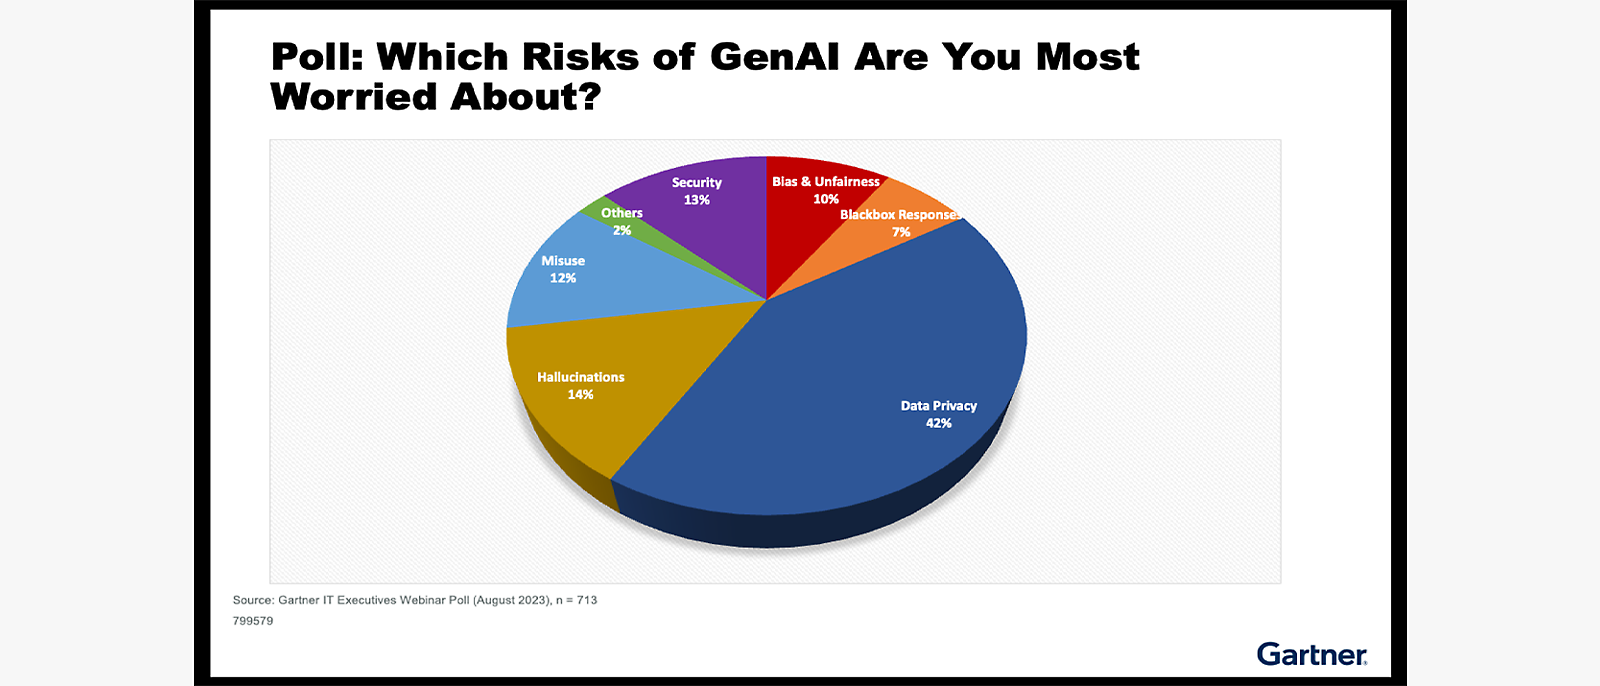 Abstimmungsergebnisse zu GenAI-Risiken: Große Sorgen um Datenprivatsphäre: 42%